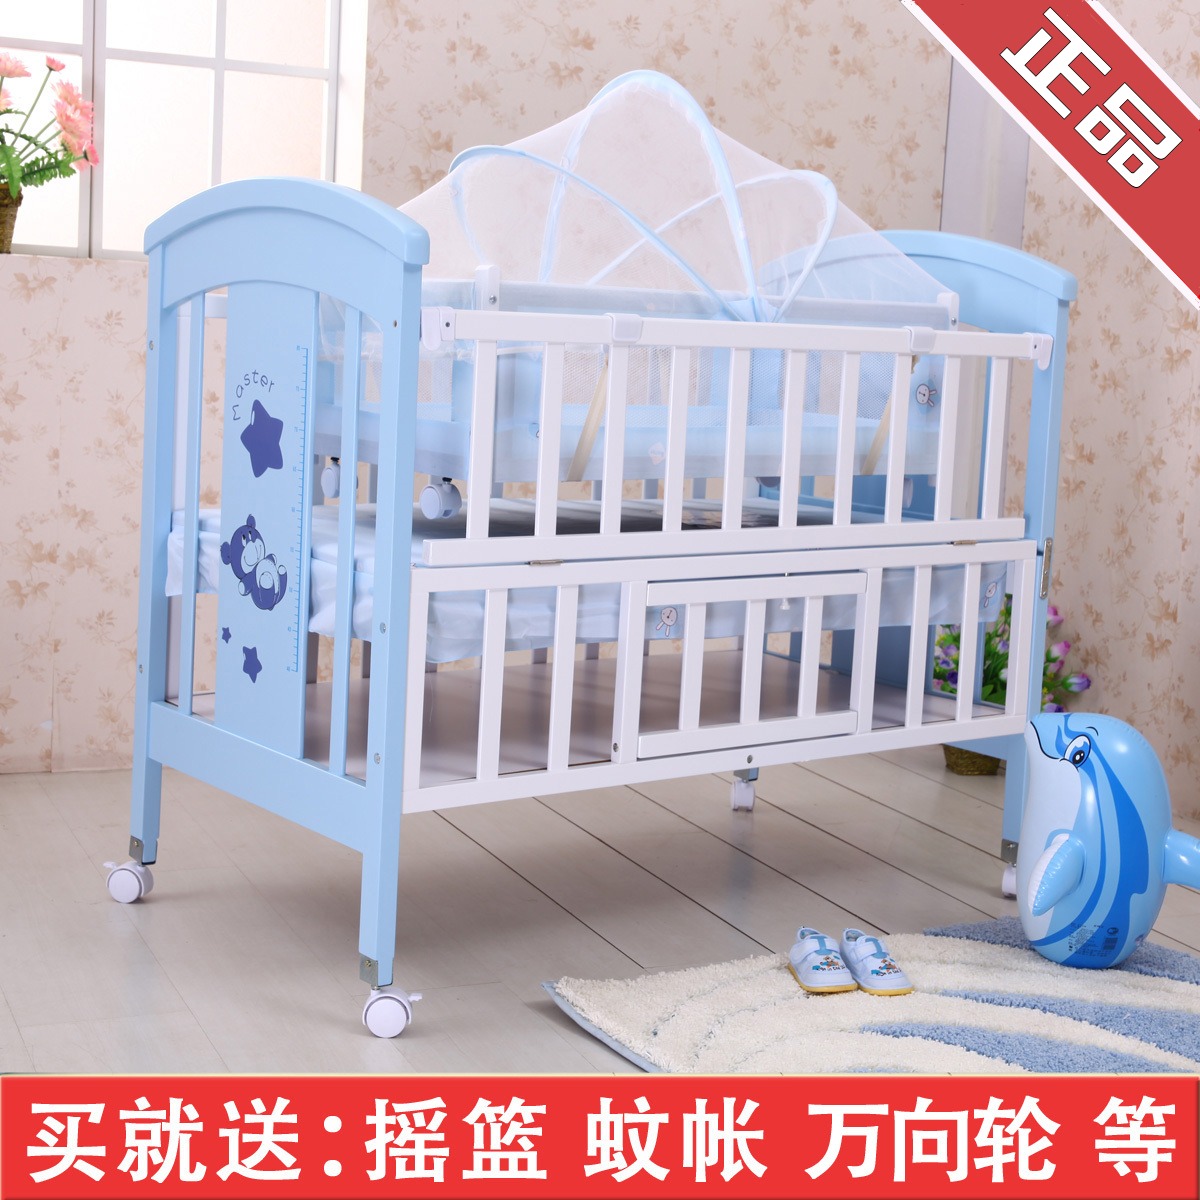 正品小硕 士实木婴儿床SK517 高档彩色宝宝床 游戏童床烤漆BB床